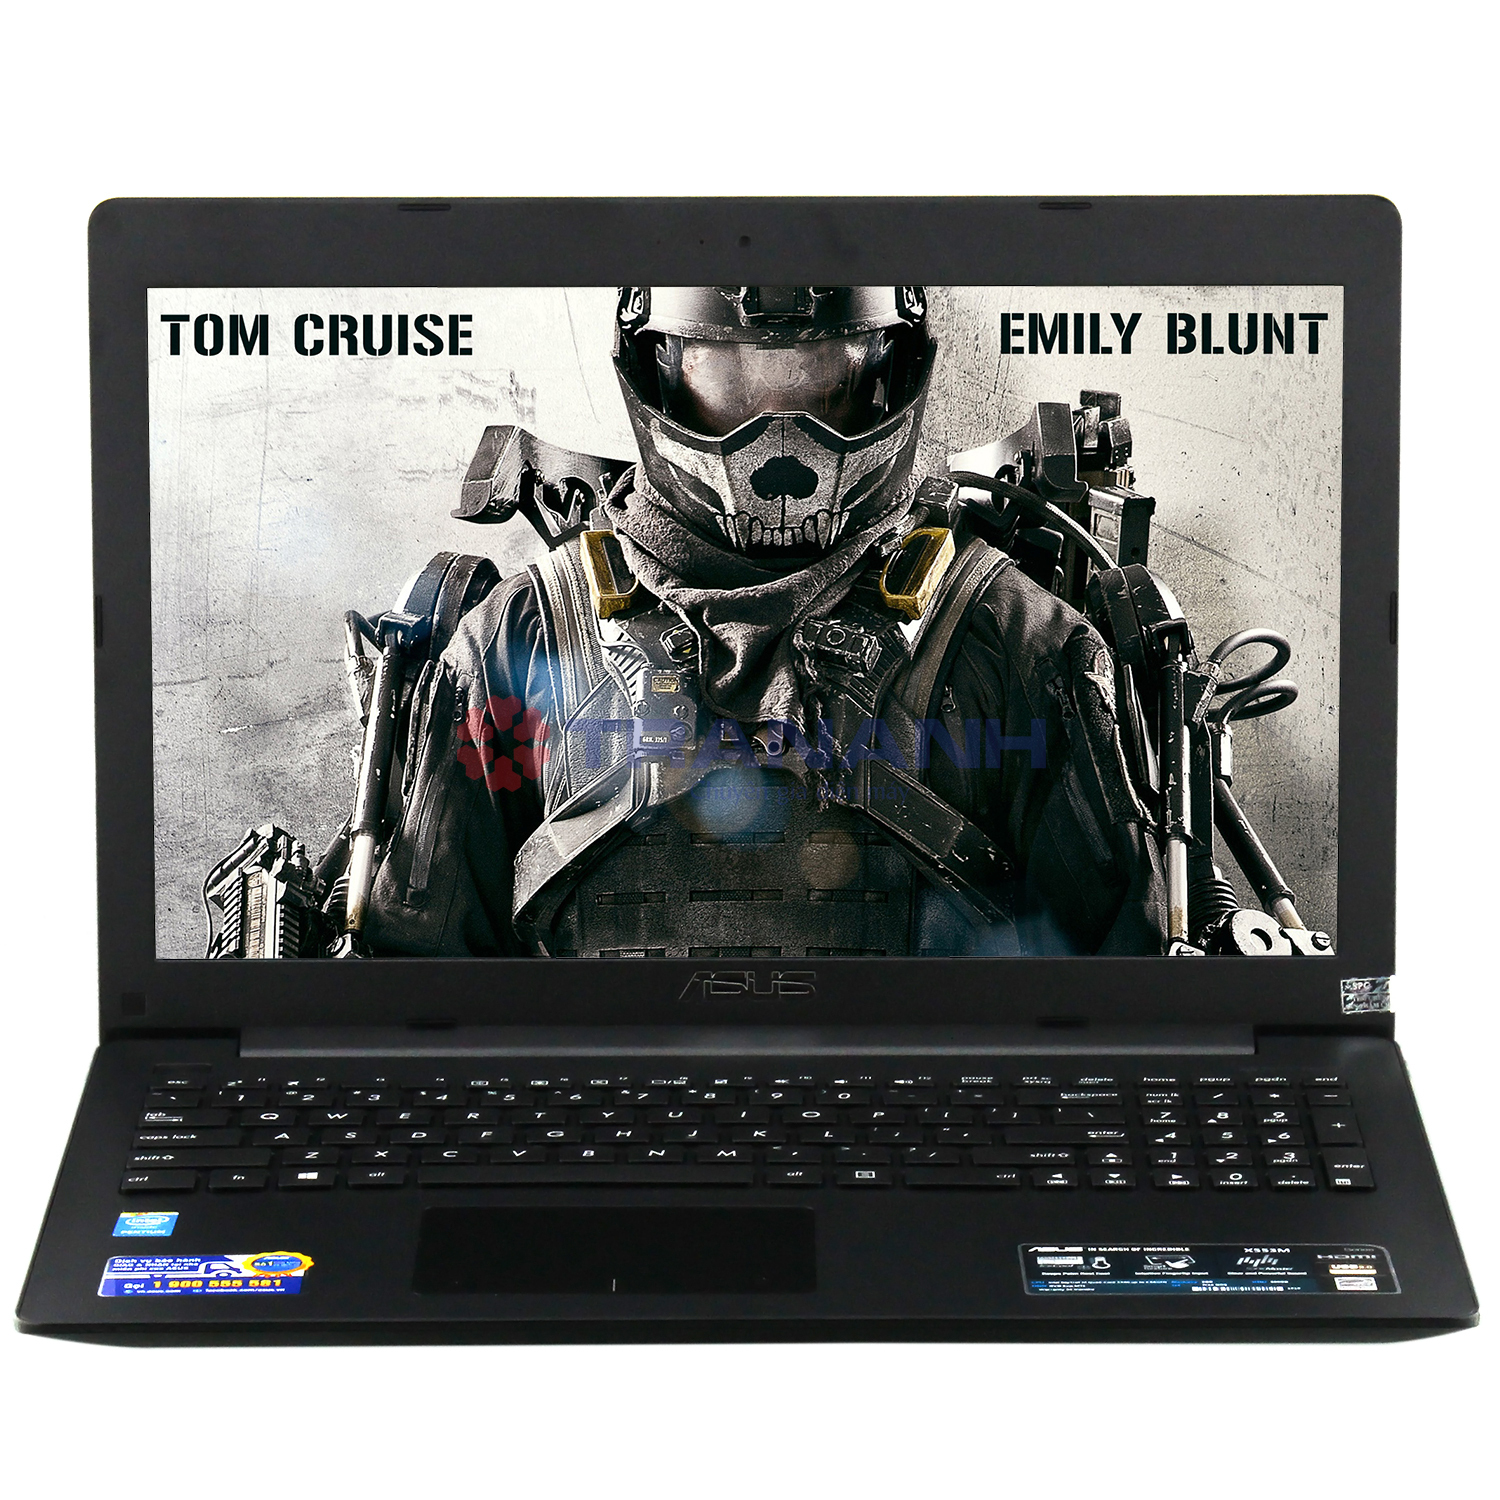 Laptop Asus X553MA-SX925D - Intel Pentium N3540, 2GB RAM, 500GB, Intel HD Graphics, 15.6Inch